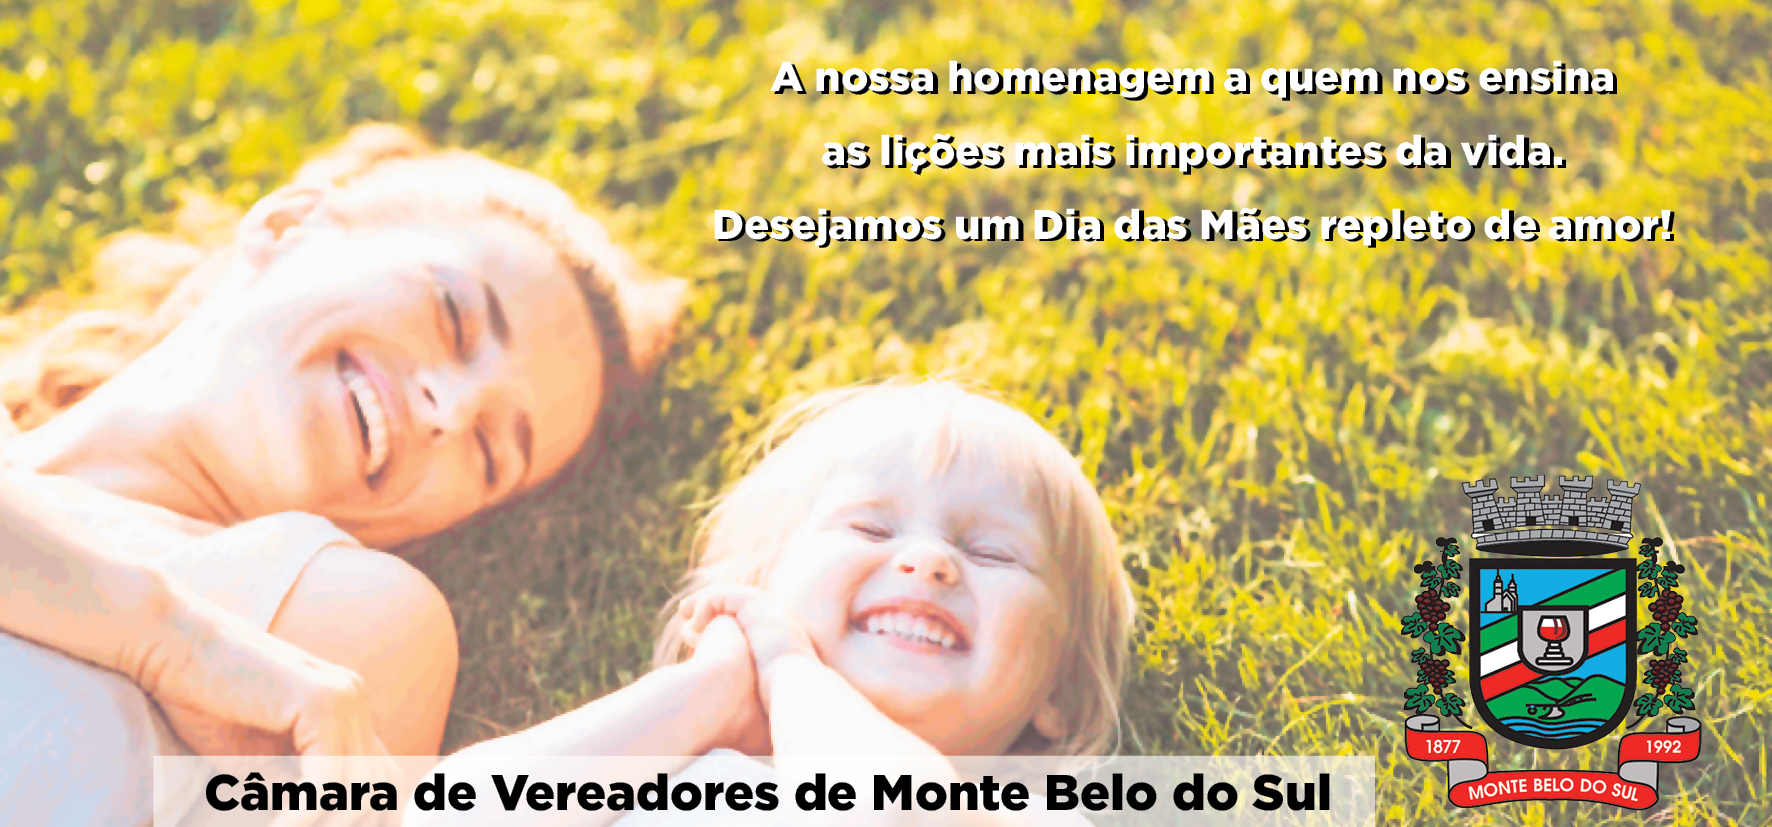  Câmara de Vereadores de Monte Belo do Sul deseja um Feliz Dia das Mães